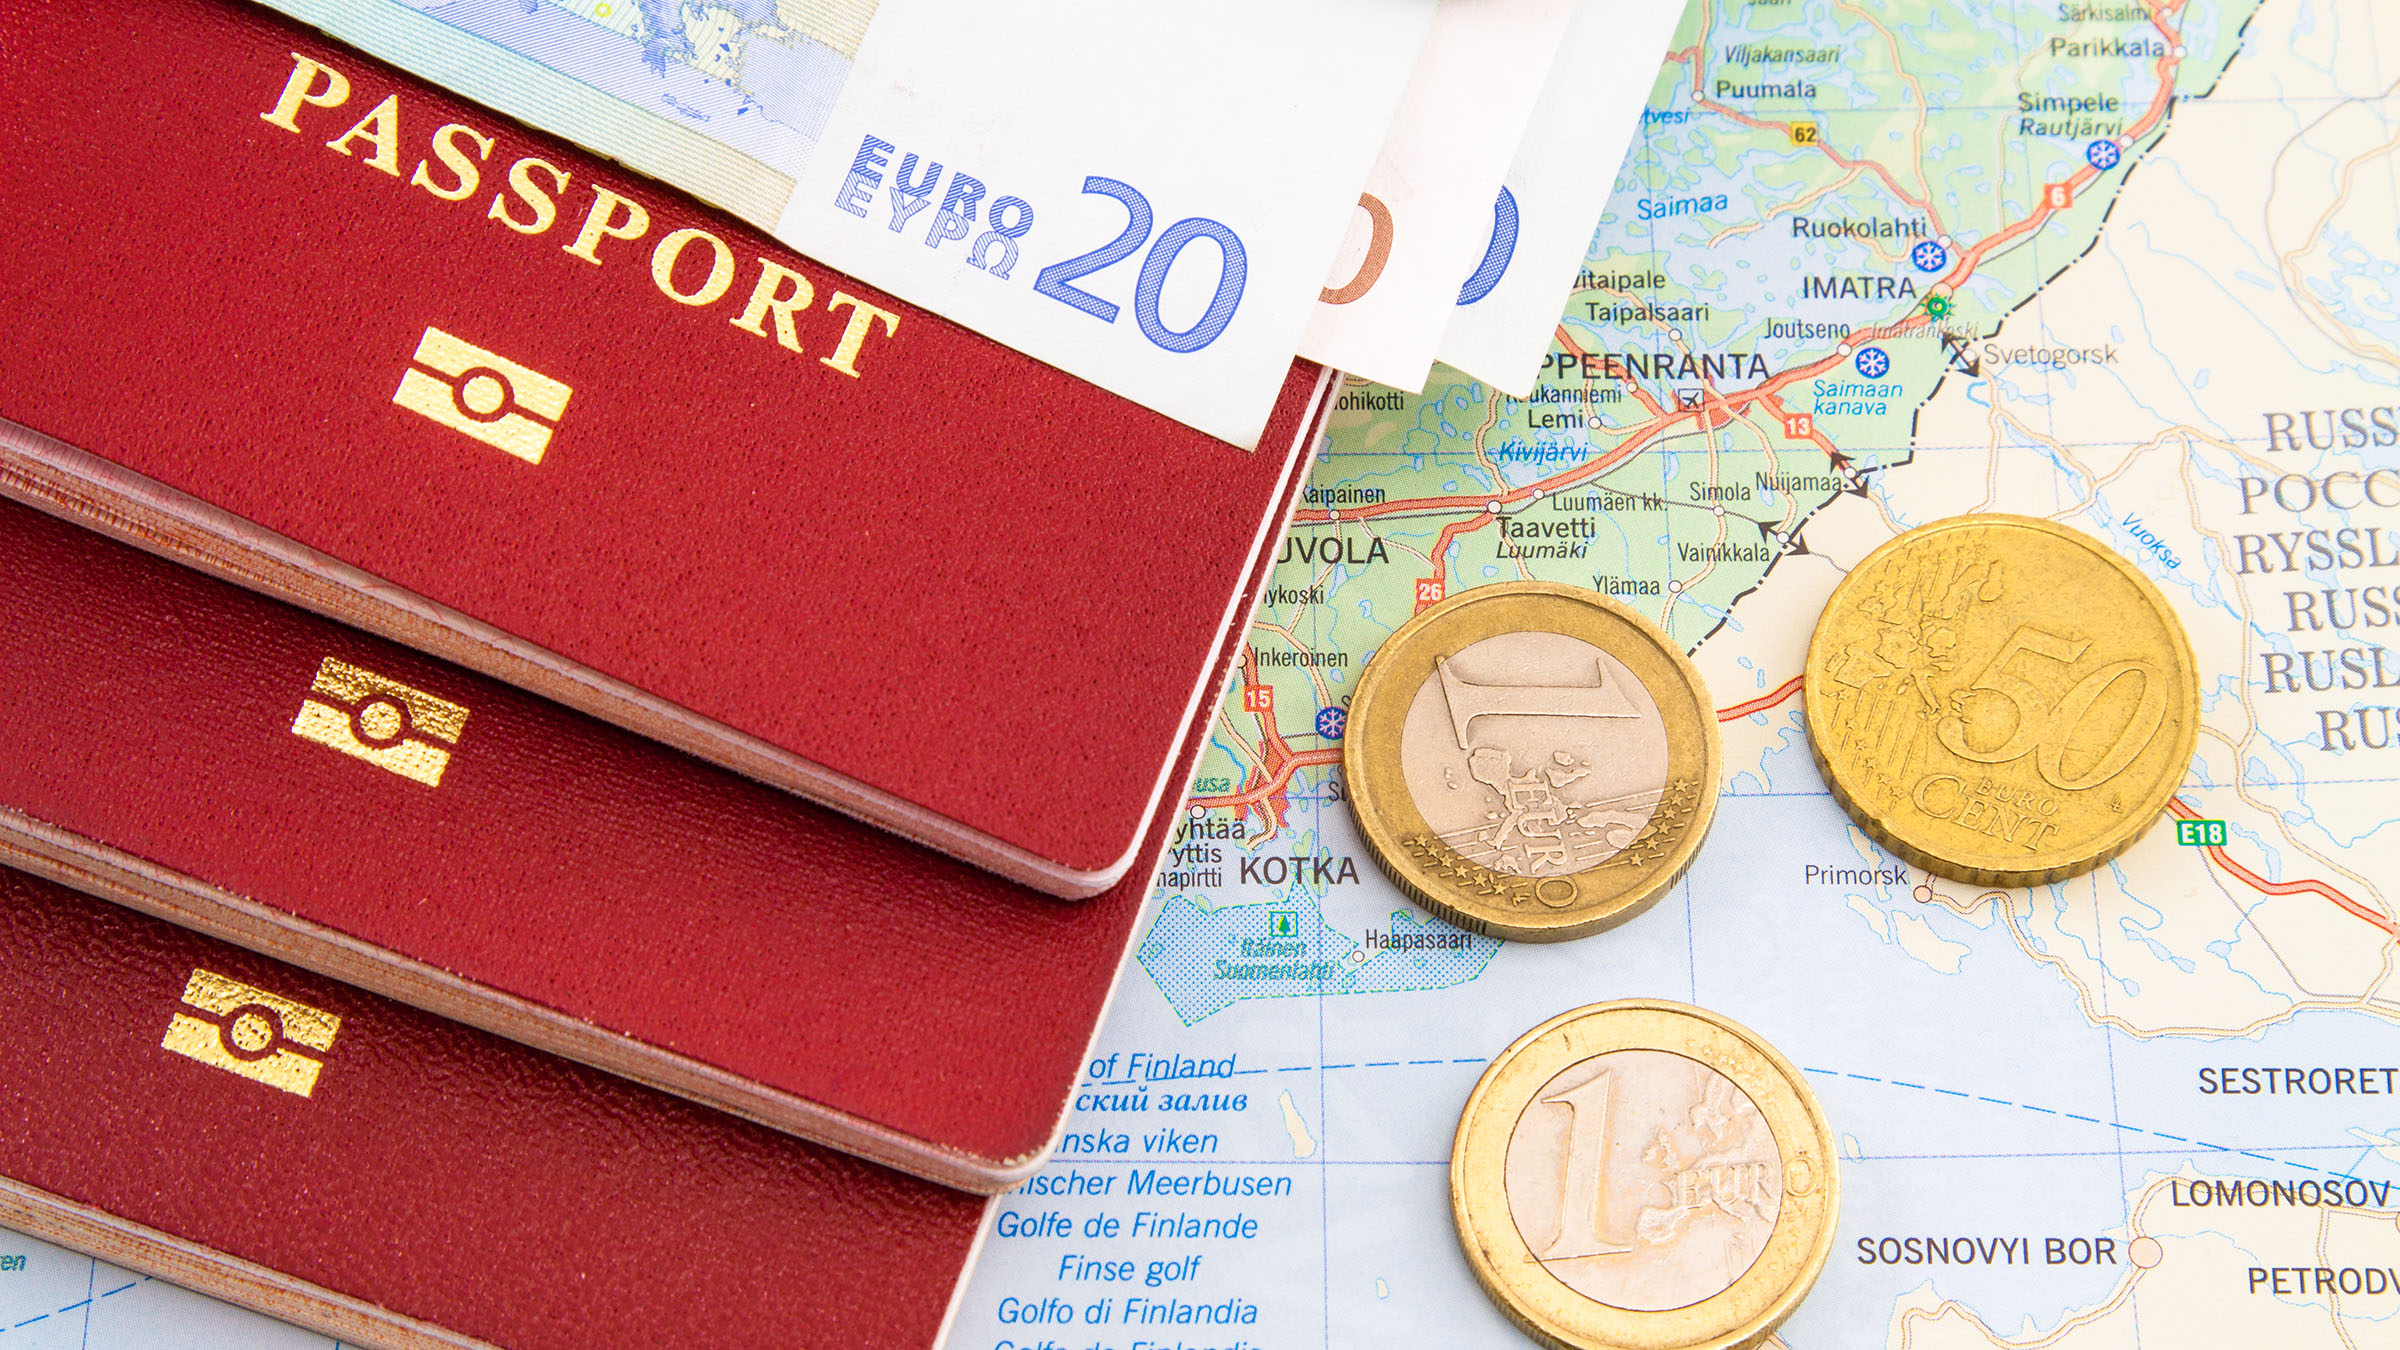 Cómo viajar a España con o sin visa. Requisitos para entrar